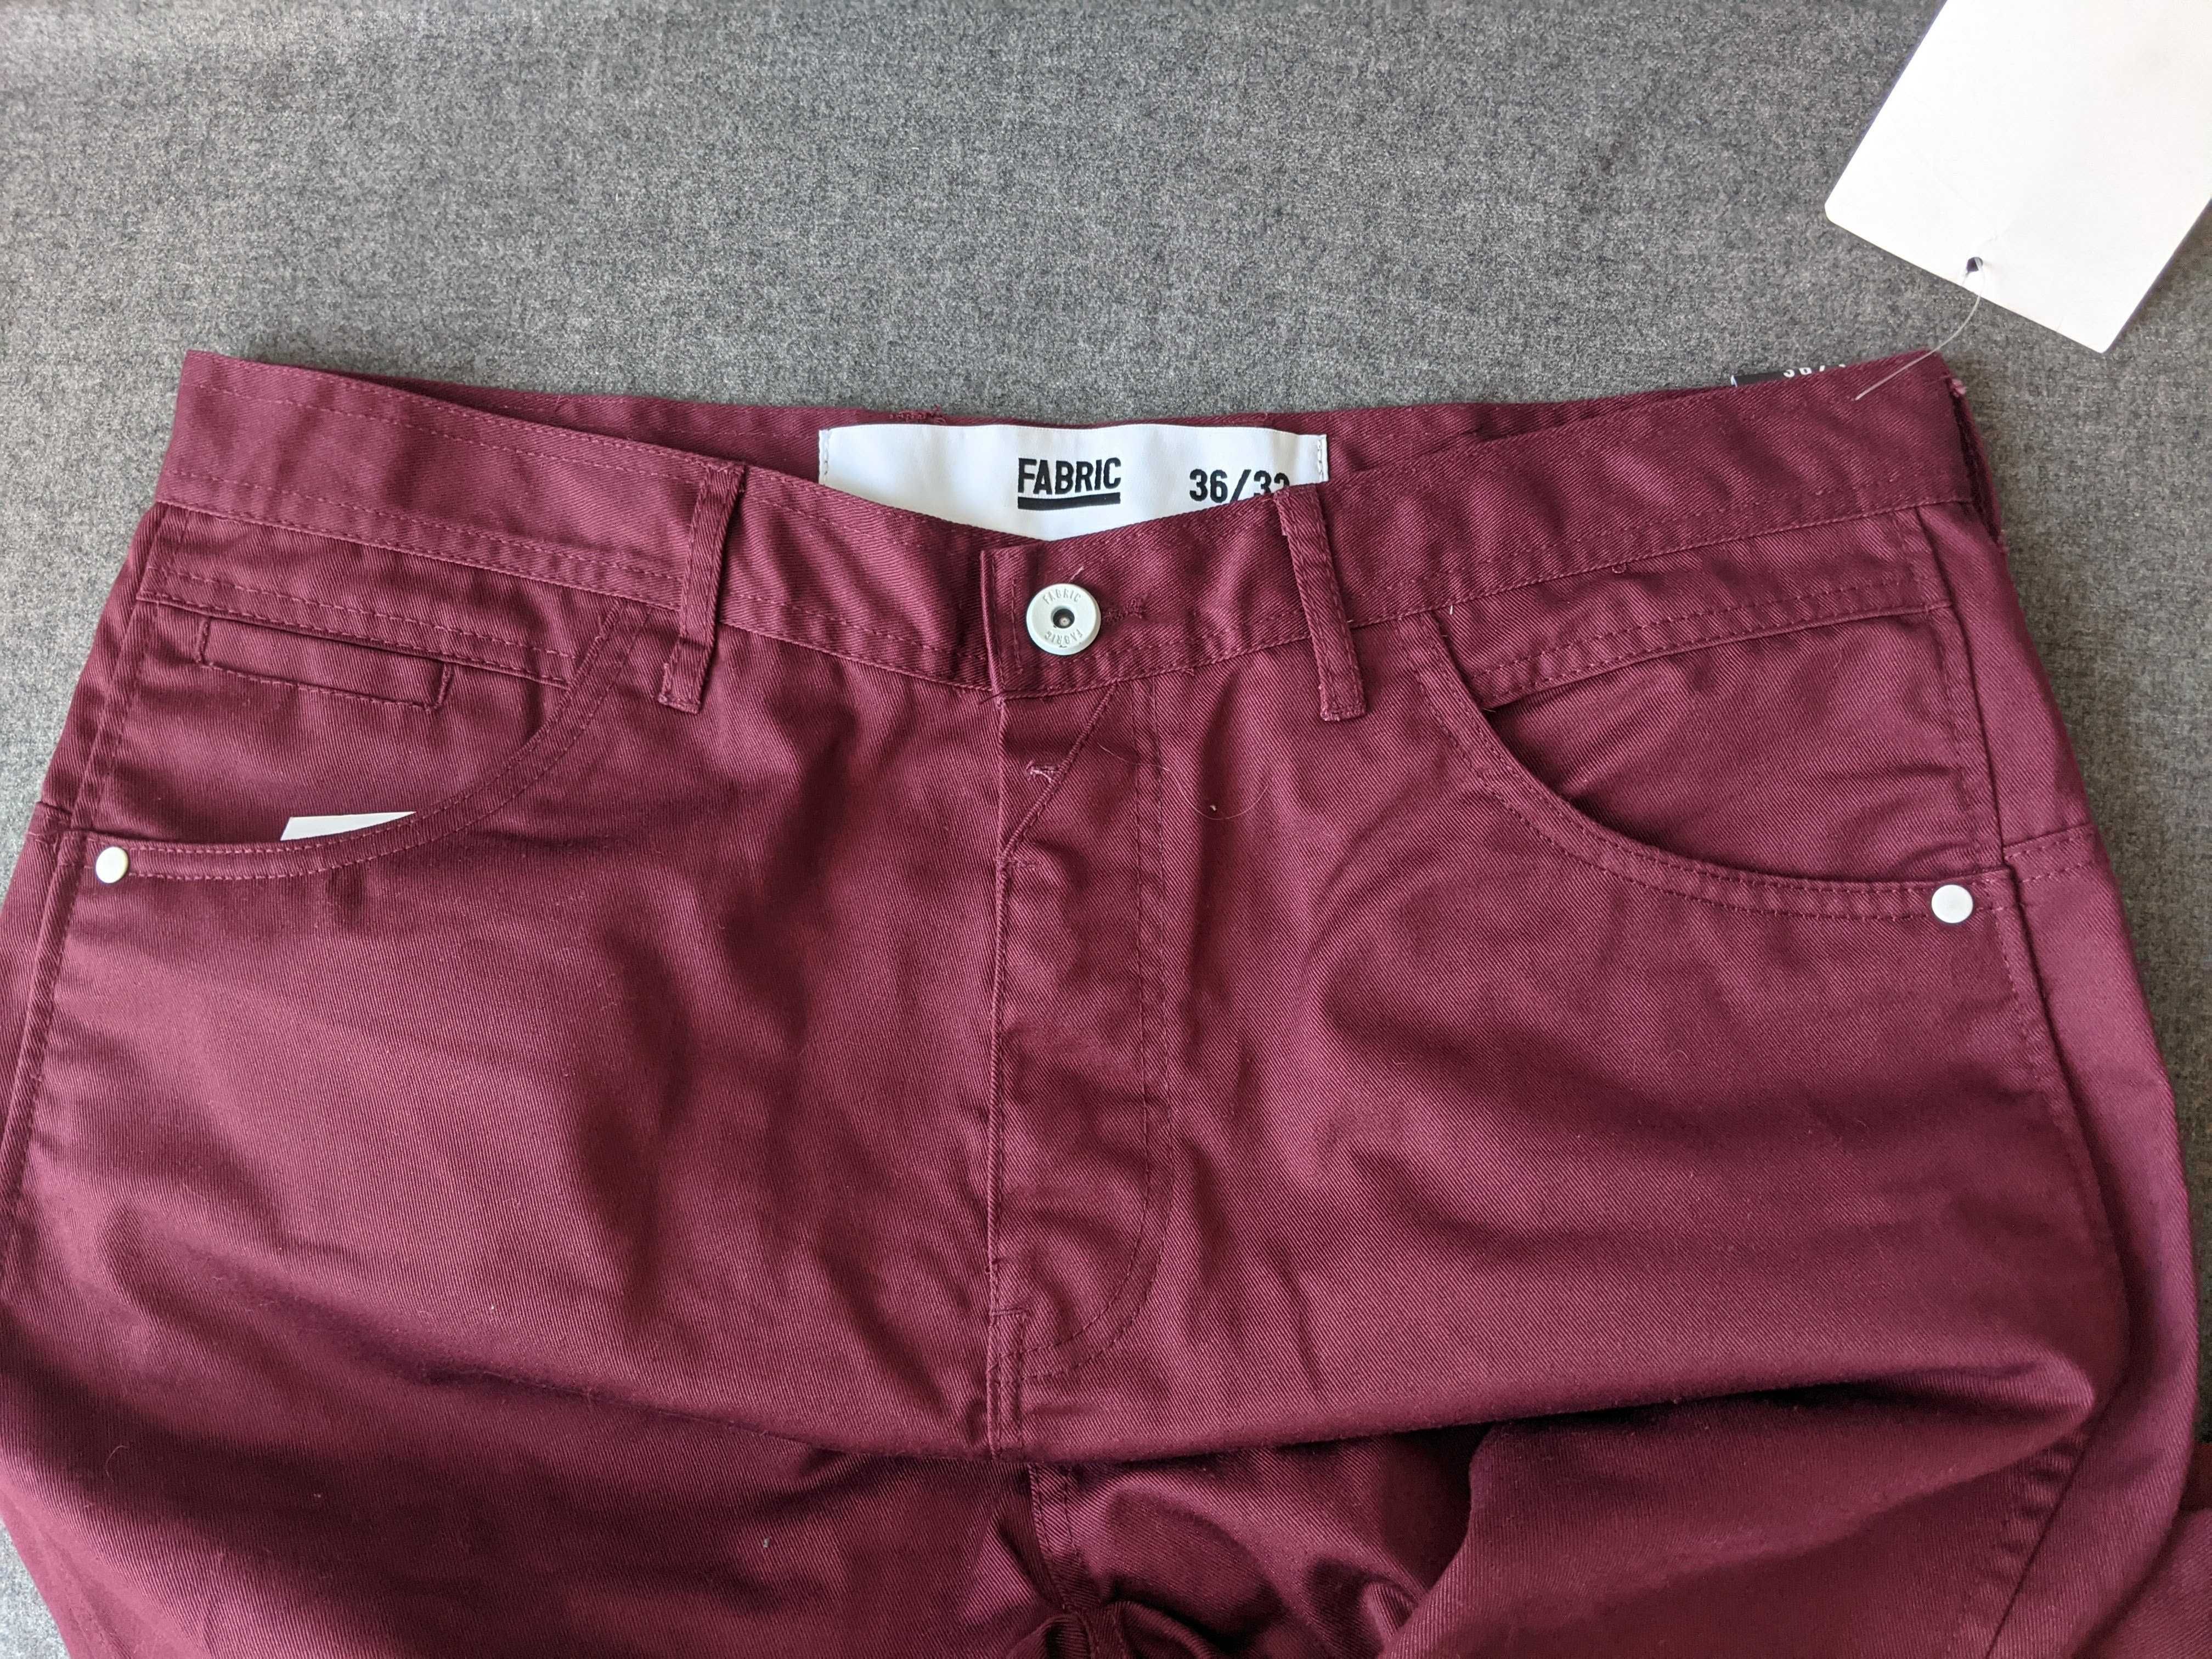 Spodnie męskie 36/32 Fabric lycra bordowe pas94